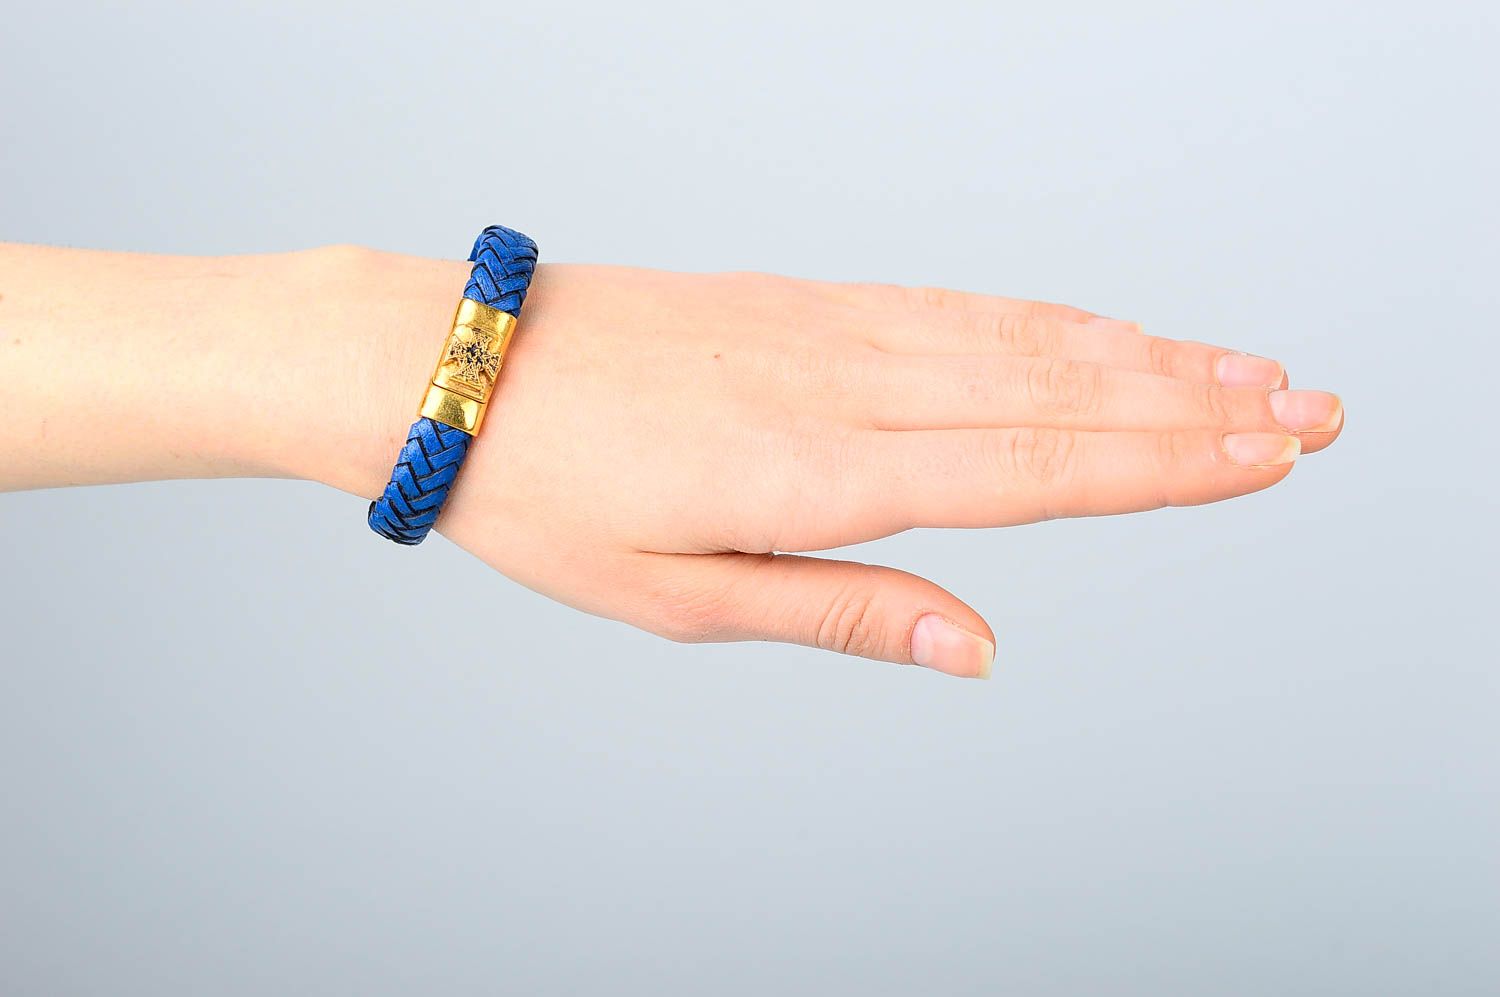 Кожаный браслет хэнд мэйд браслет на руку модный плетеный украшение из кожи фото 2